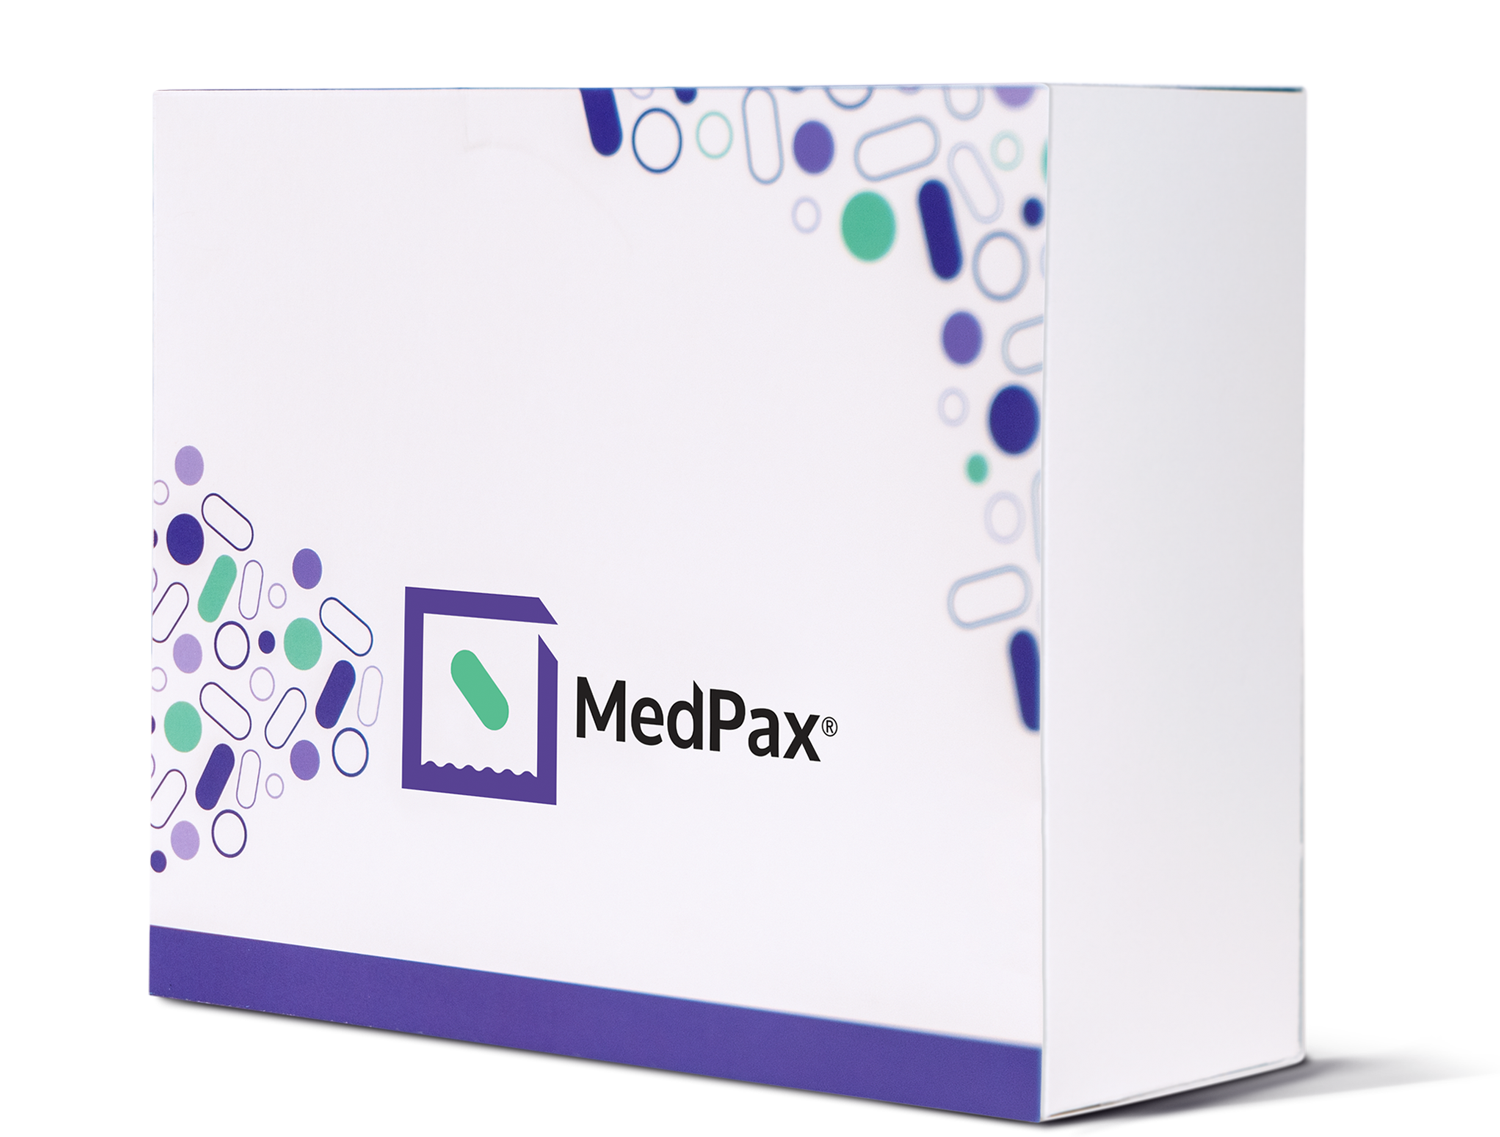 The WholeScripts MedPax box.